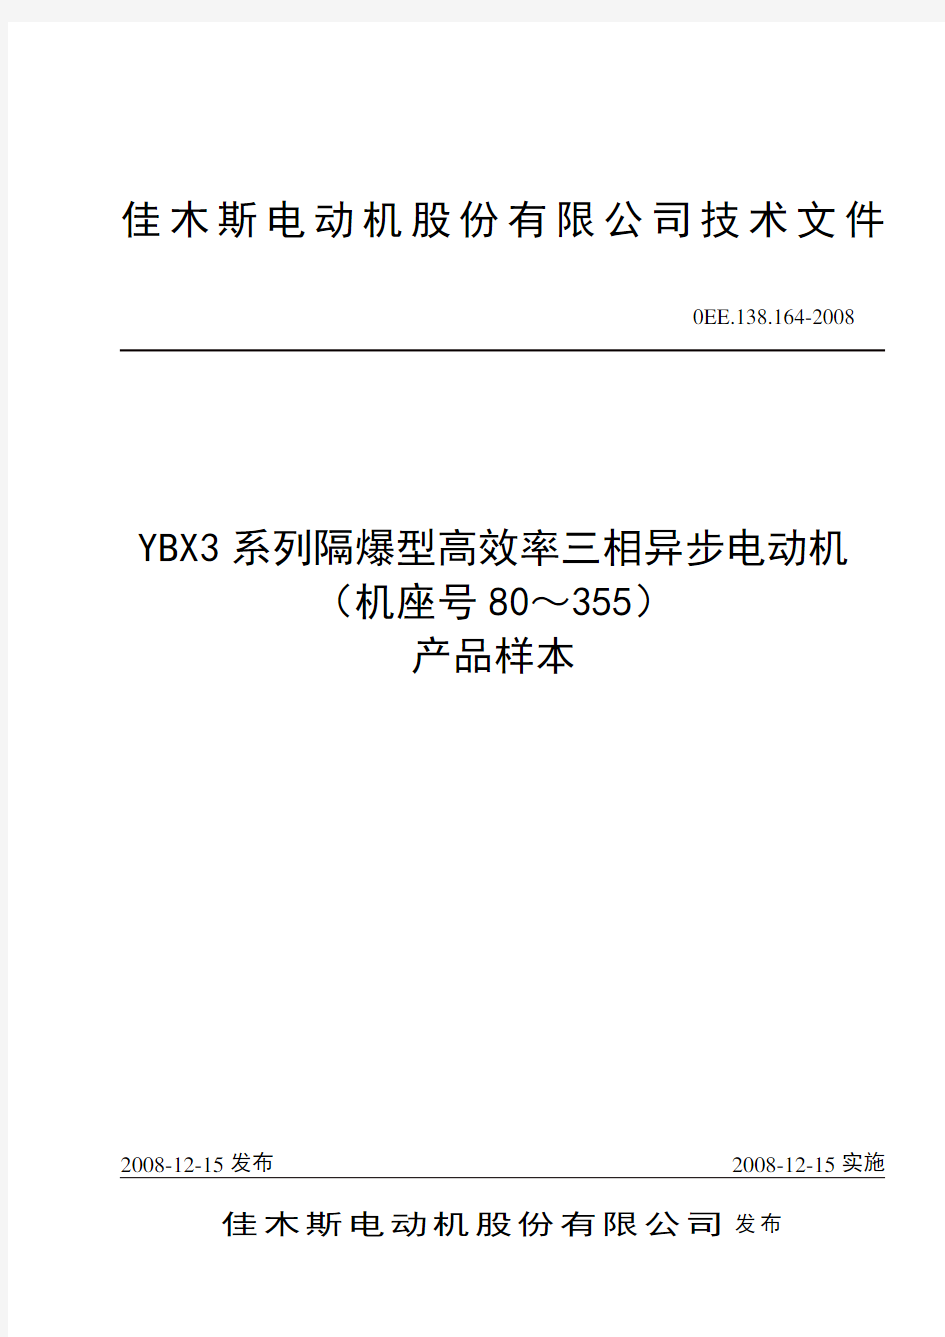 YBX3三相异步电动机样本(单行本)